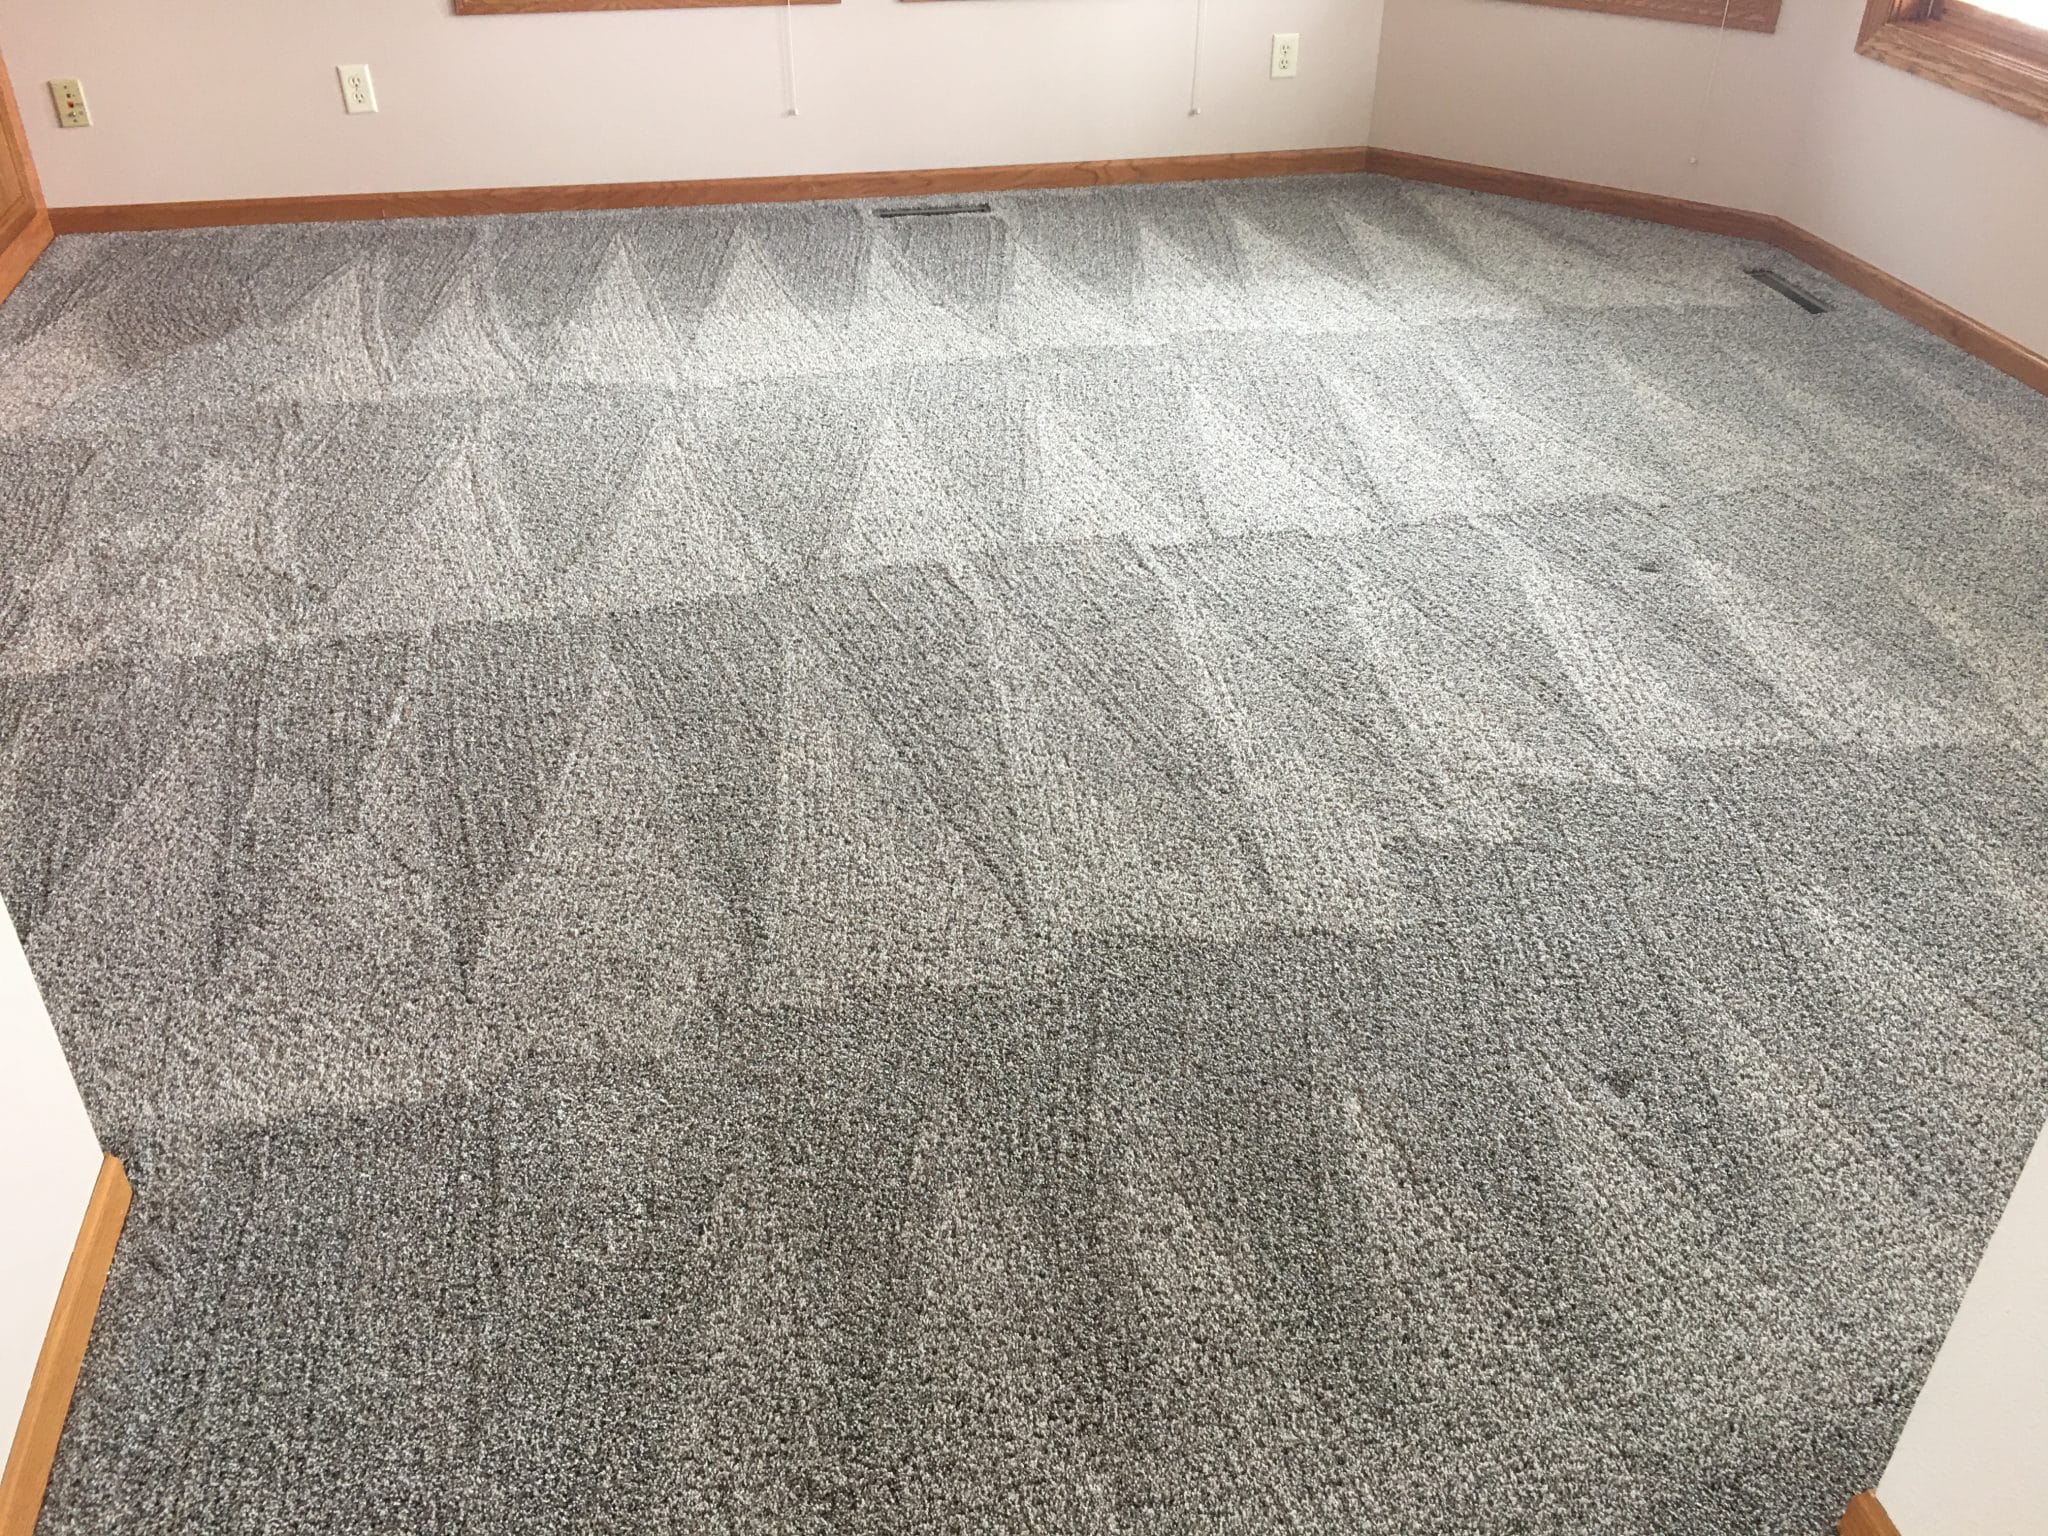 best commercial carpet cleaner in racine, racine commercial carpet cleaner, best commercial carpet cleaner racine